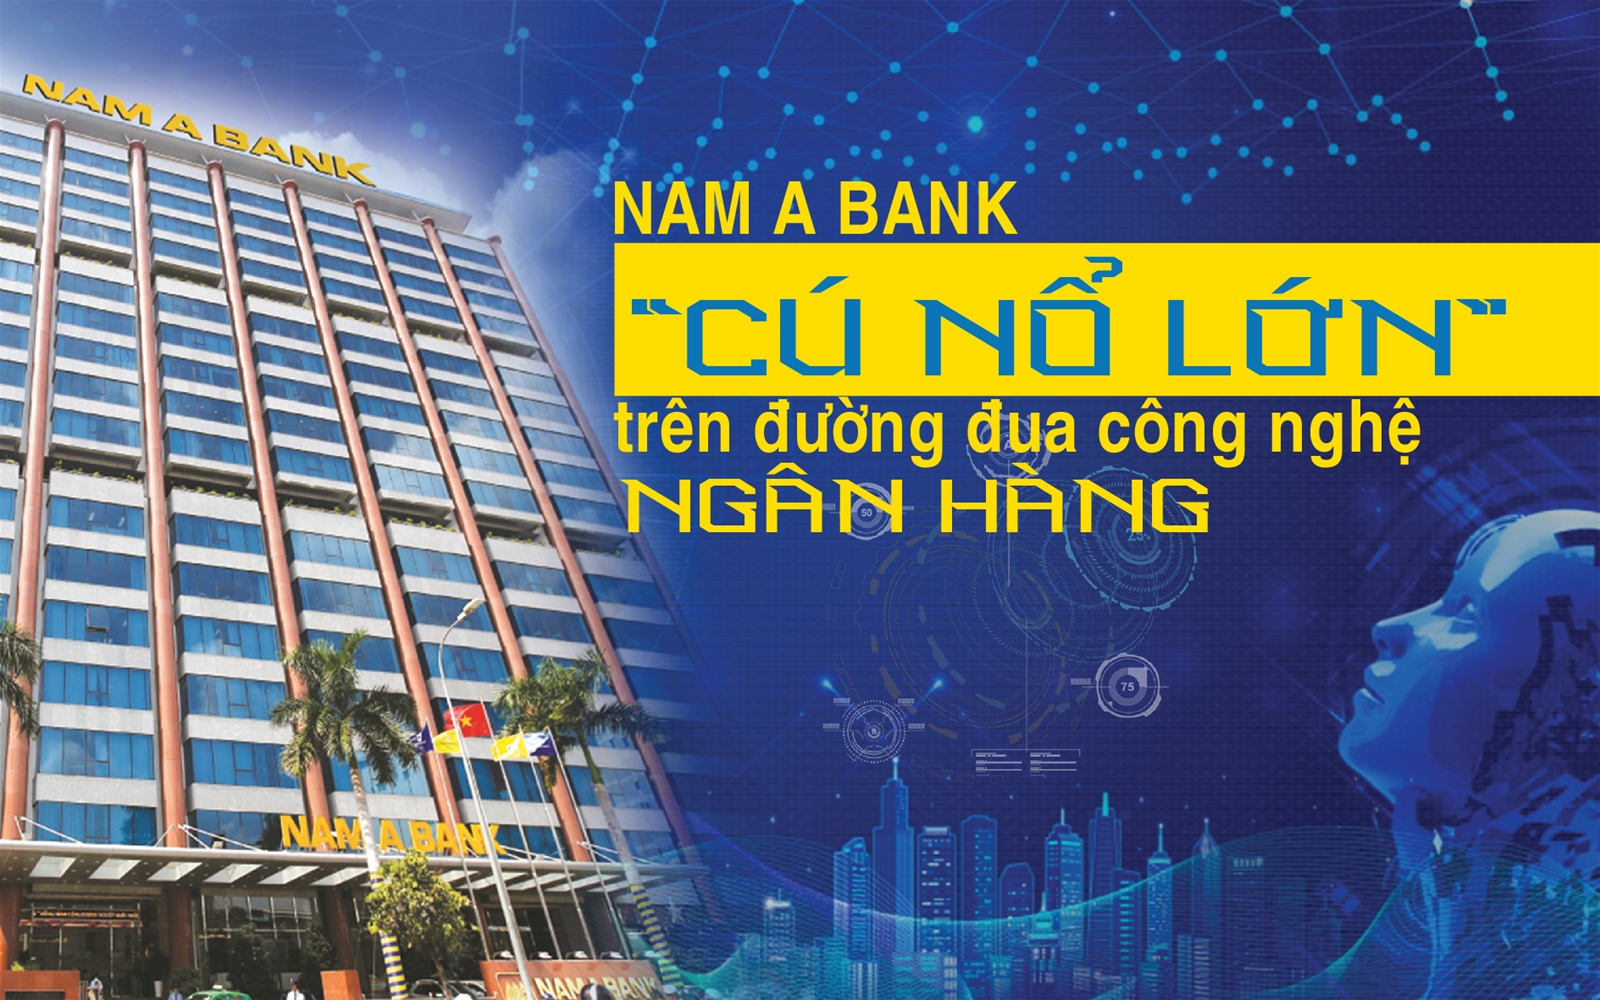 Nam A Bank - “cú nổ lớn” trên đường đua công nghệ ngân hàng